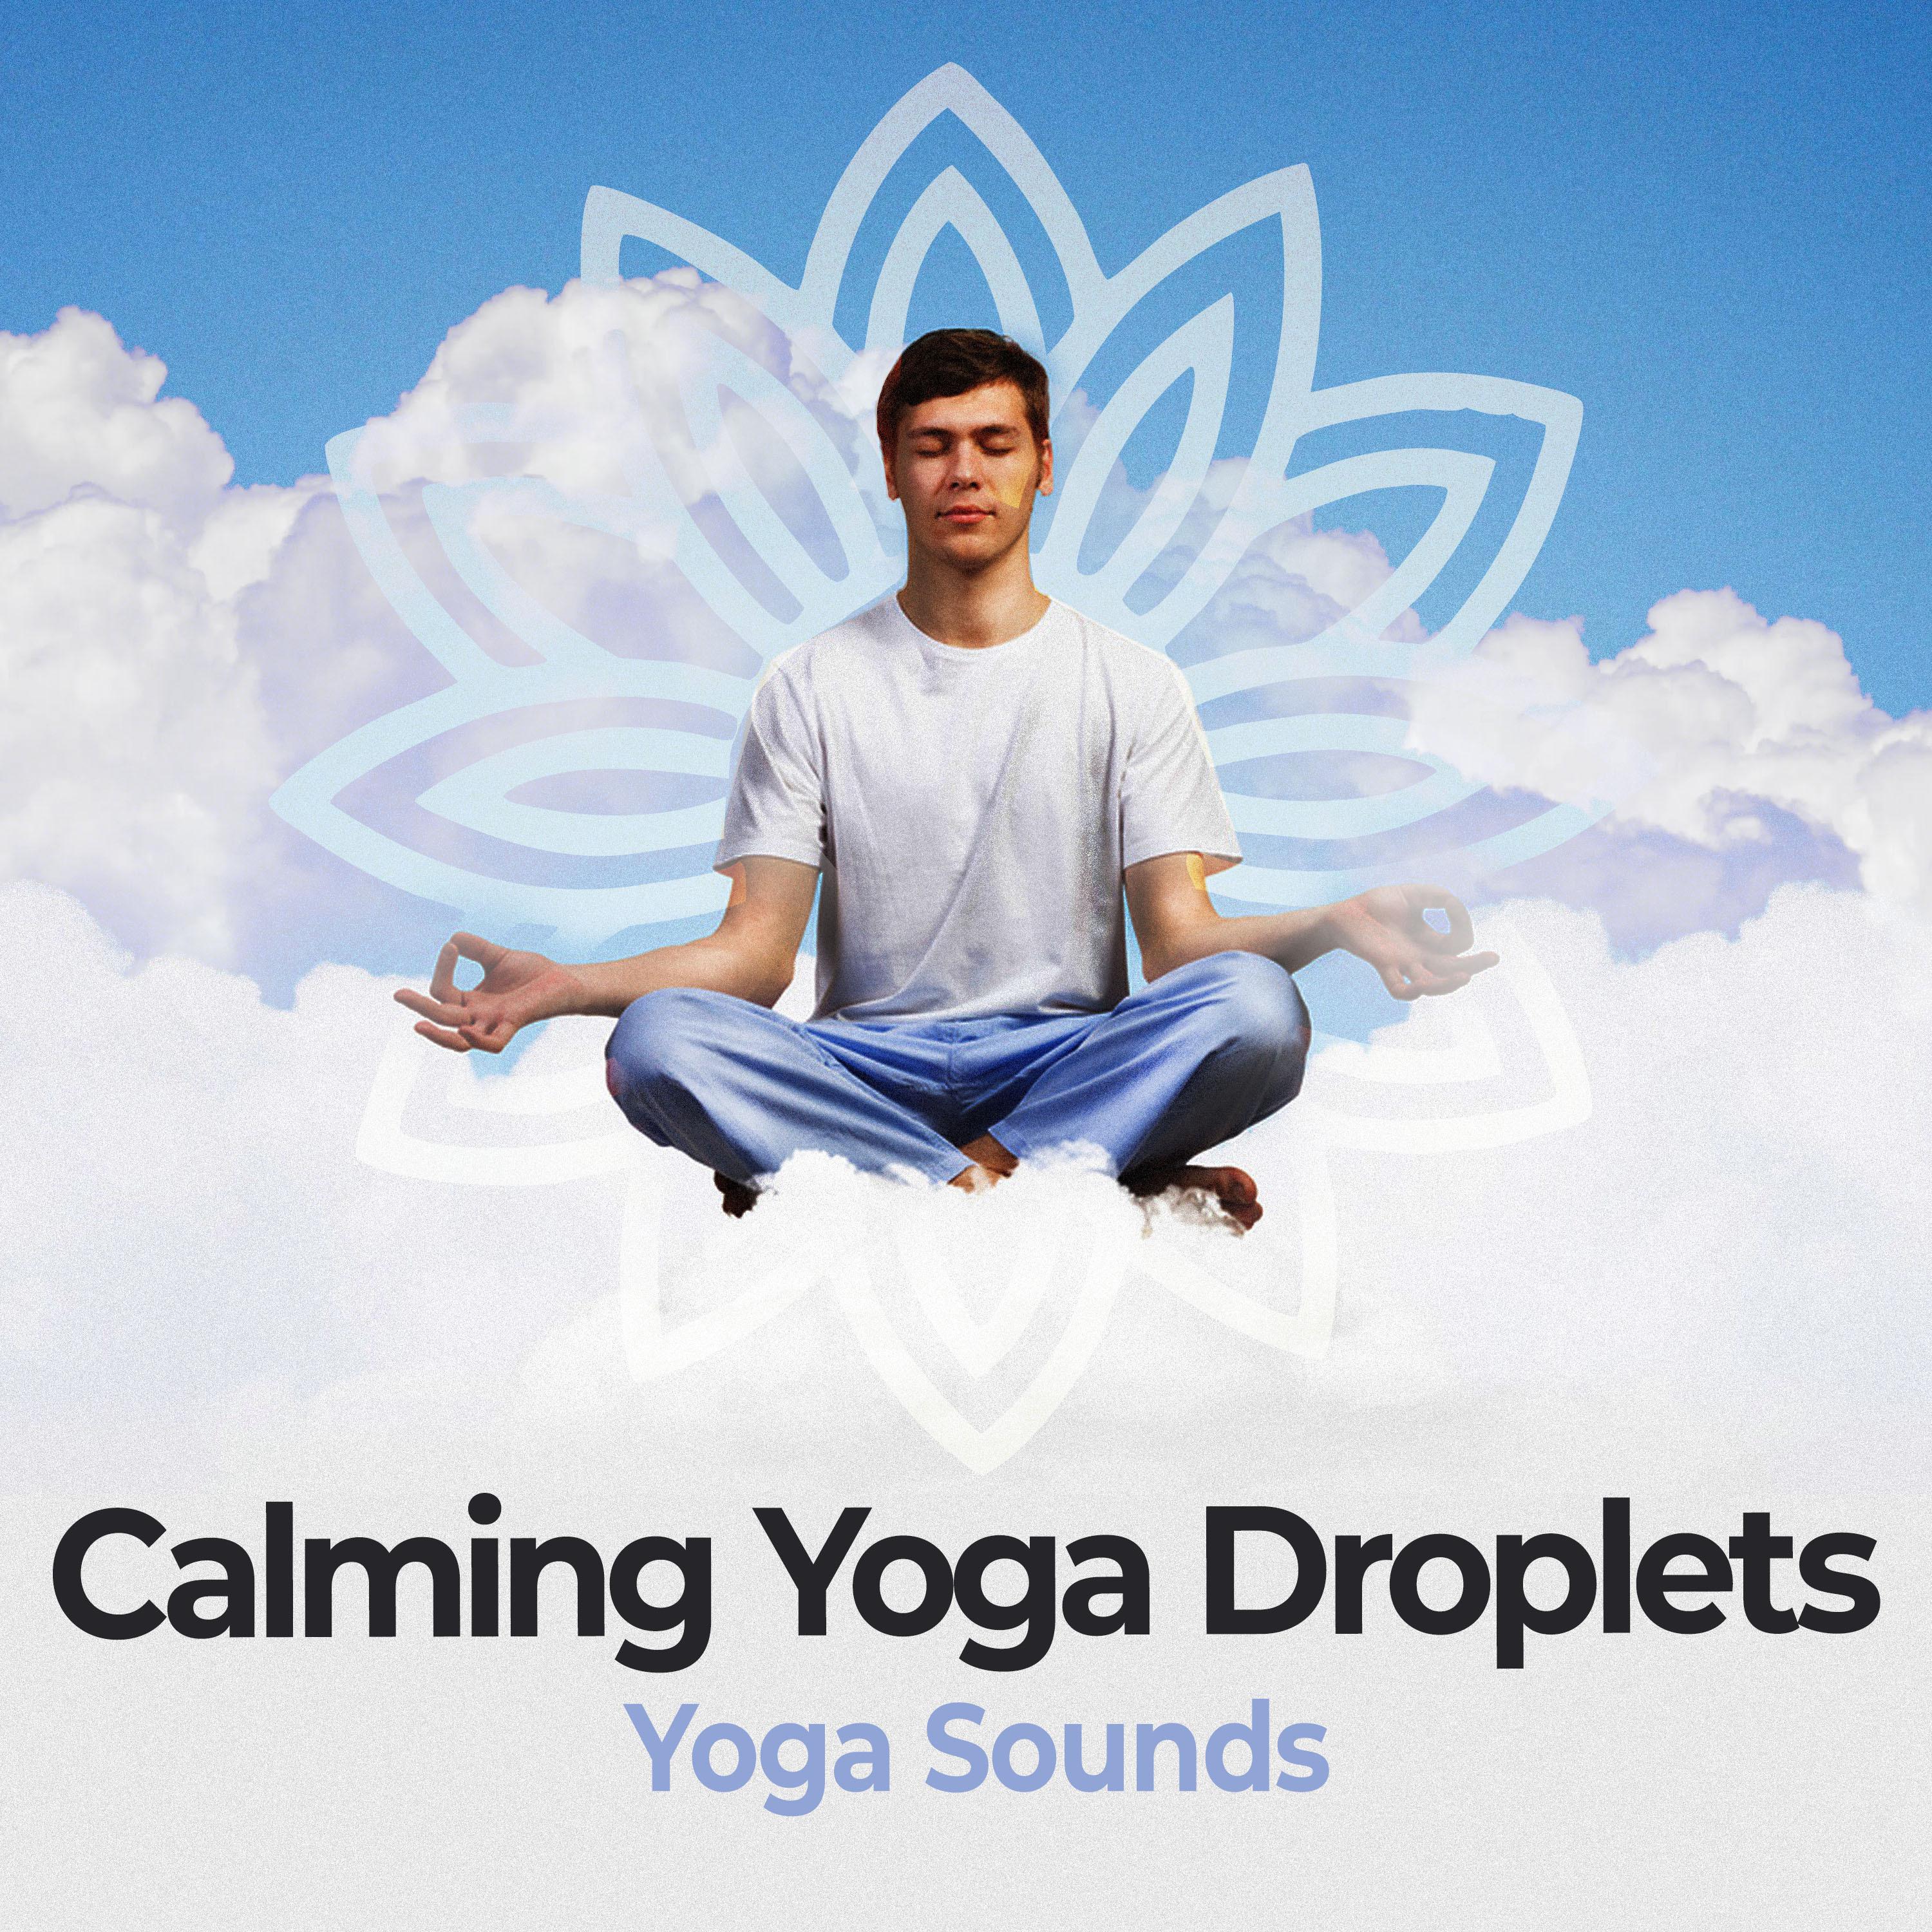 Calming Yoga Droplets